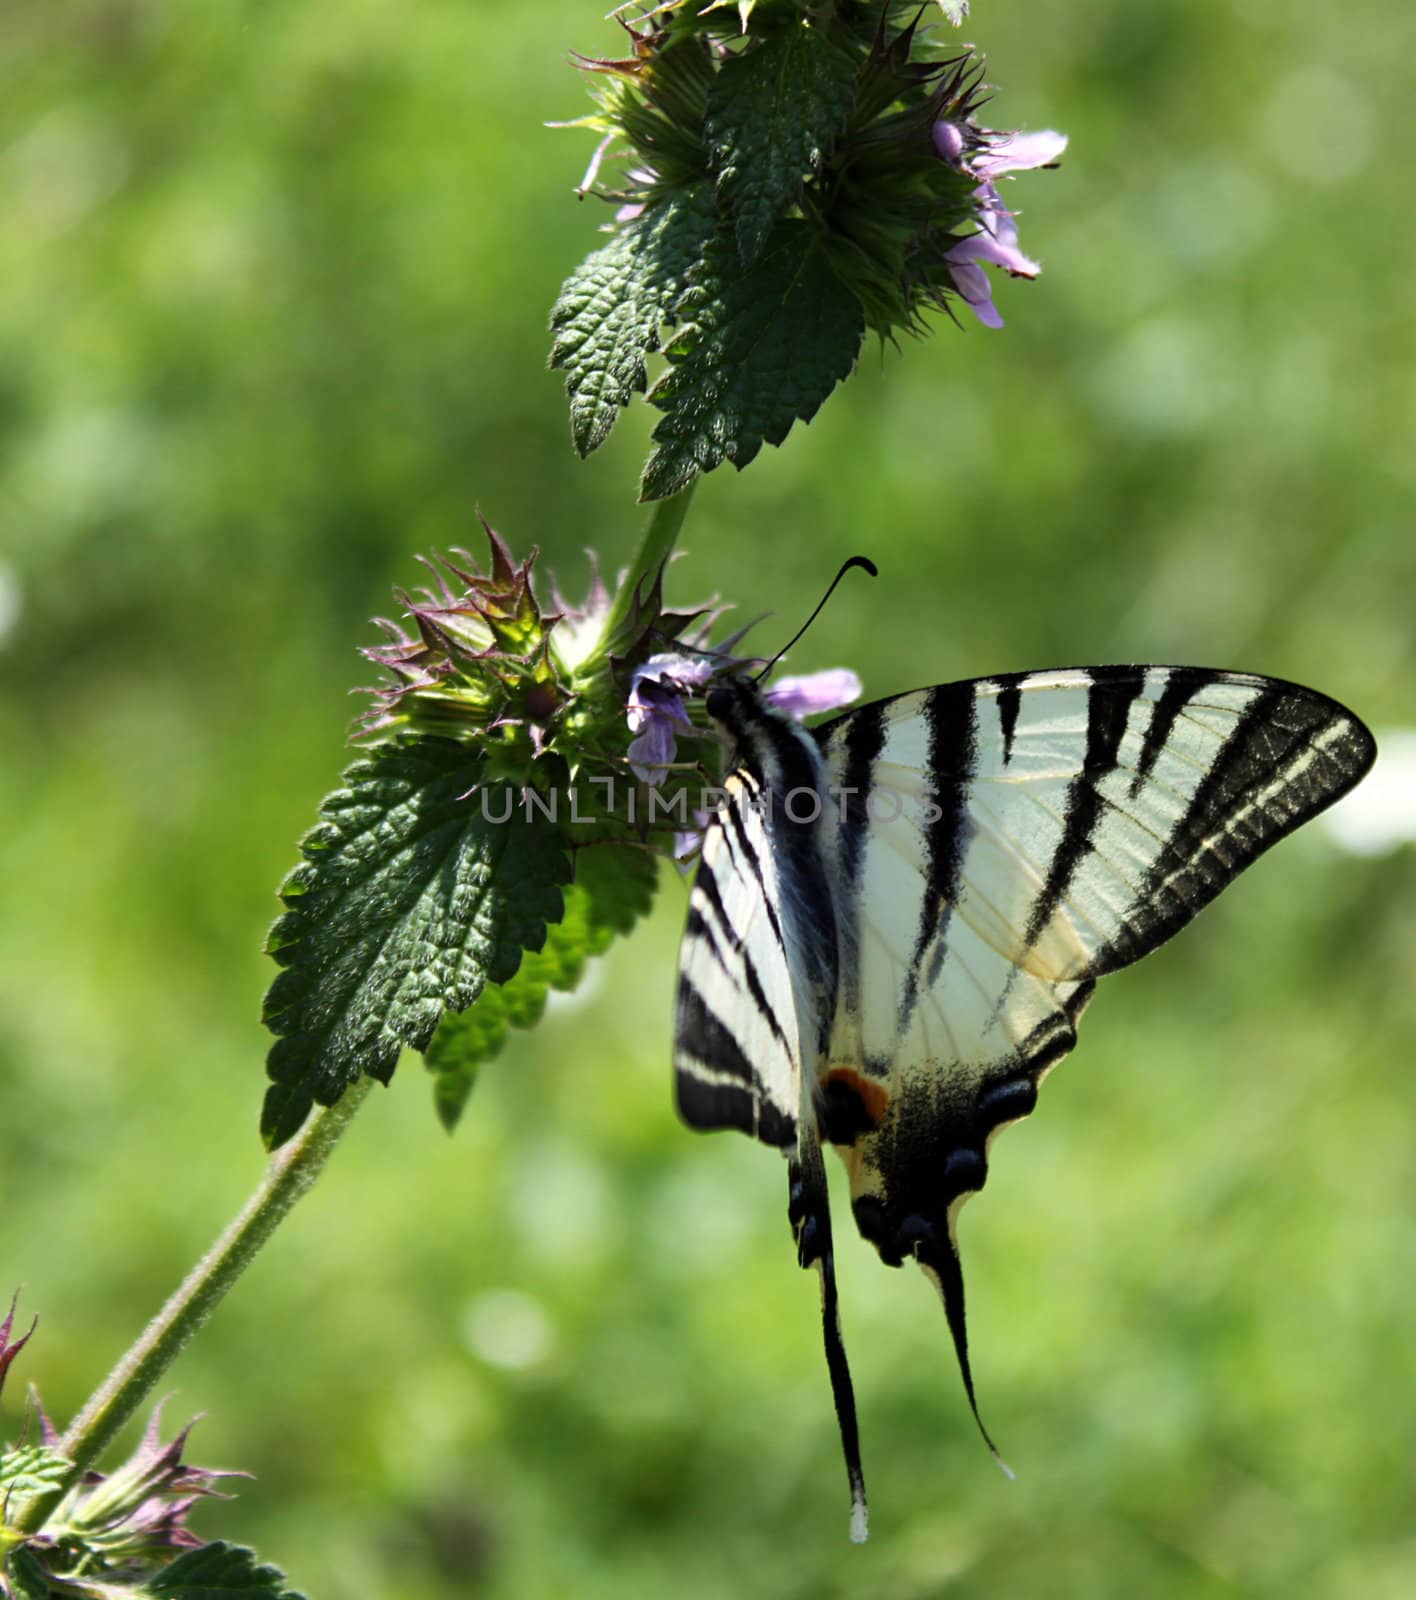 butterfly (Scarce Swallowtail) on wild flower